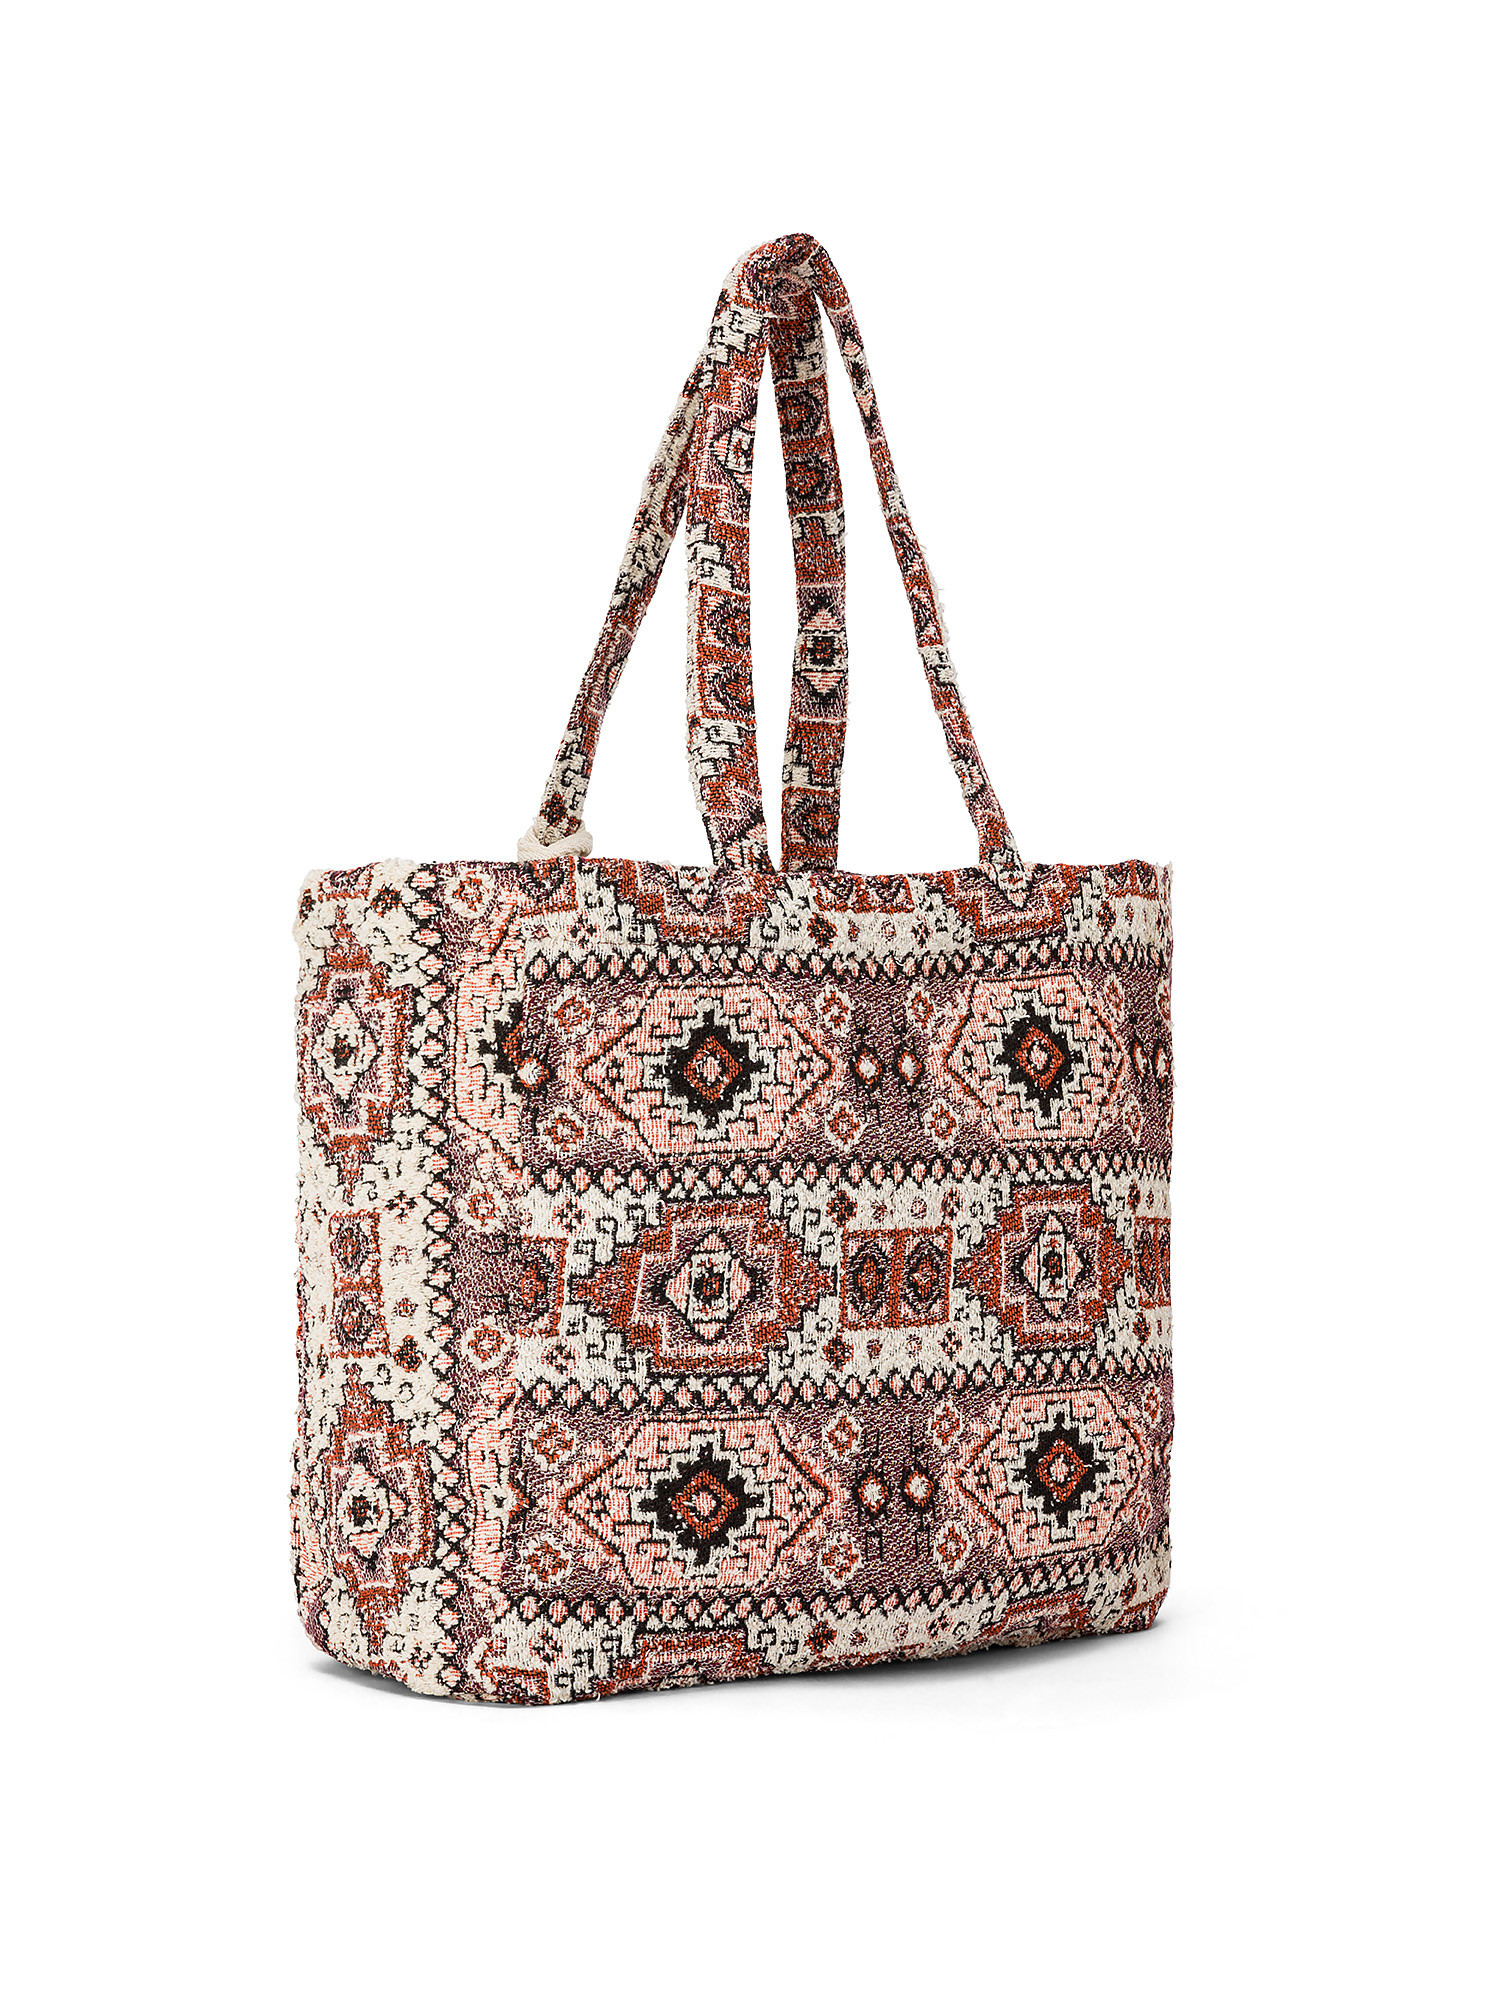 Koan - Patterned shopping bag, Beige, large image number 1